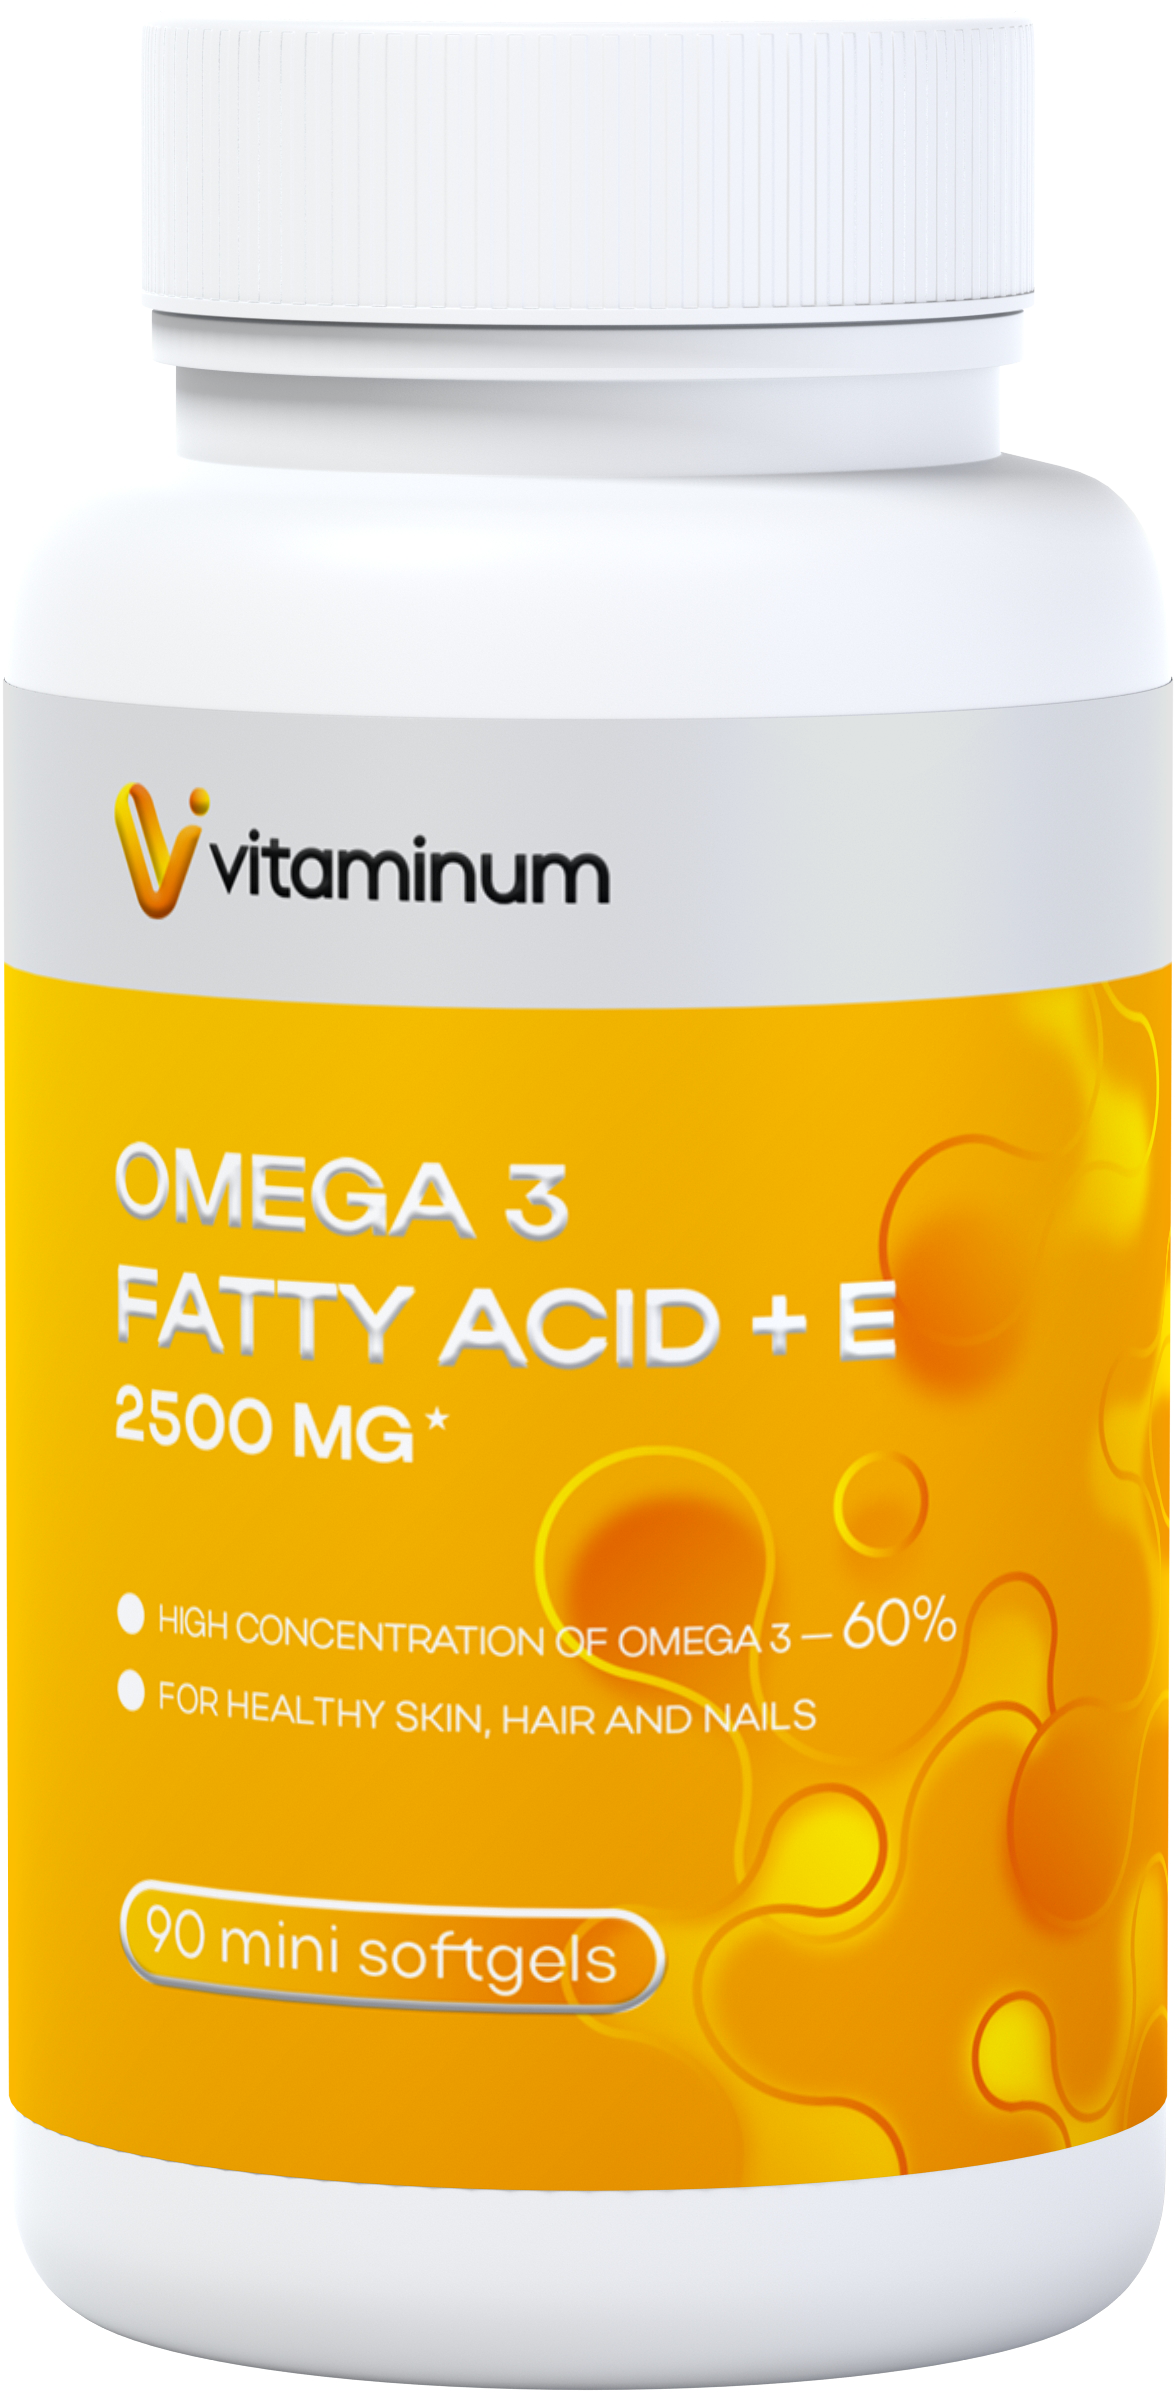  Vitaminum ОМЕГА 3 60% + витамин Е (2500 MG*) 90 капсул 700 мг   в Волжском